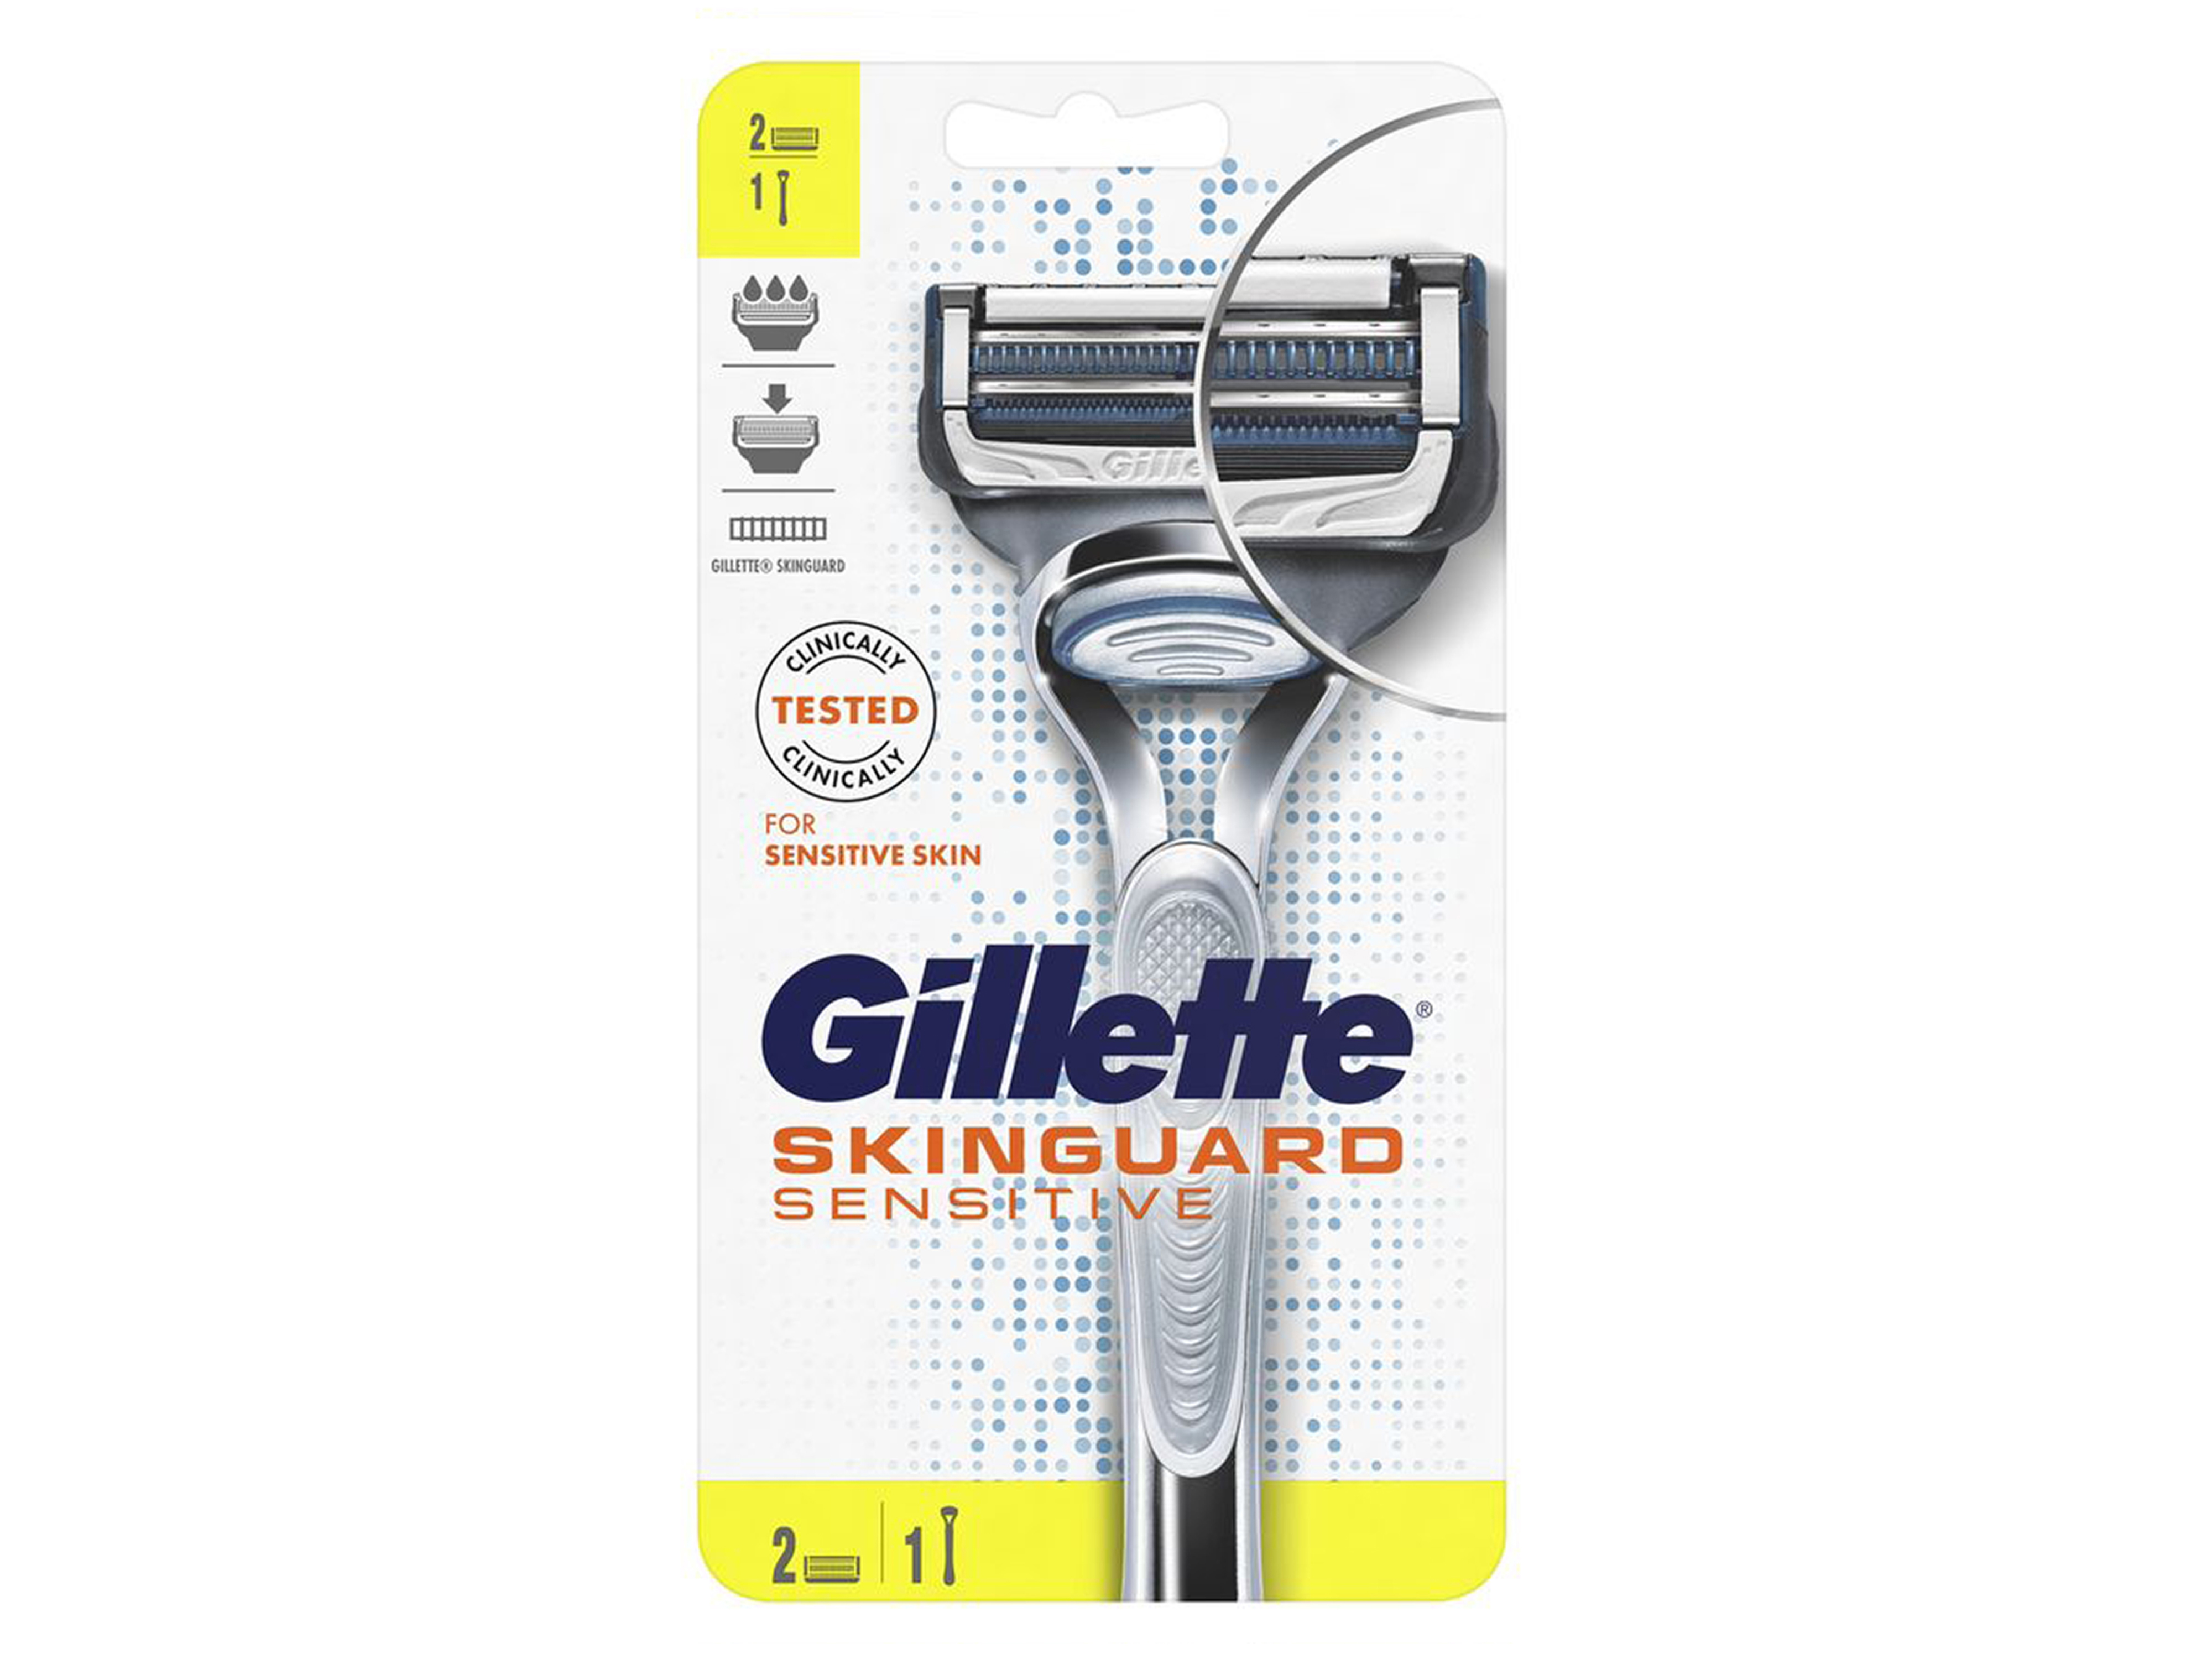 Gillette Skinguard Sensitive barberhøvel, 1 stk.